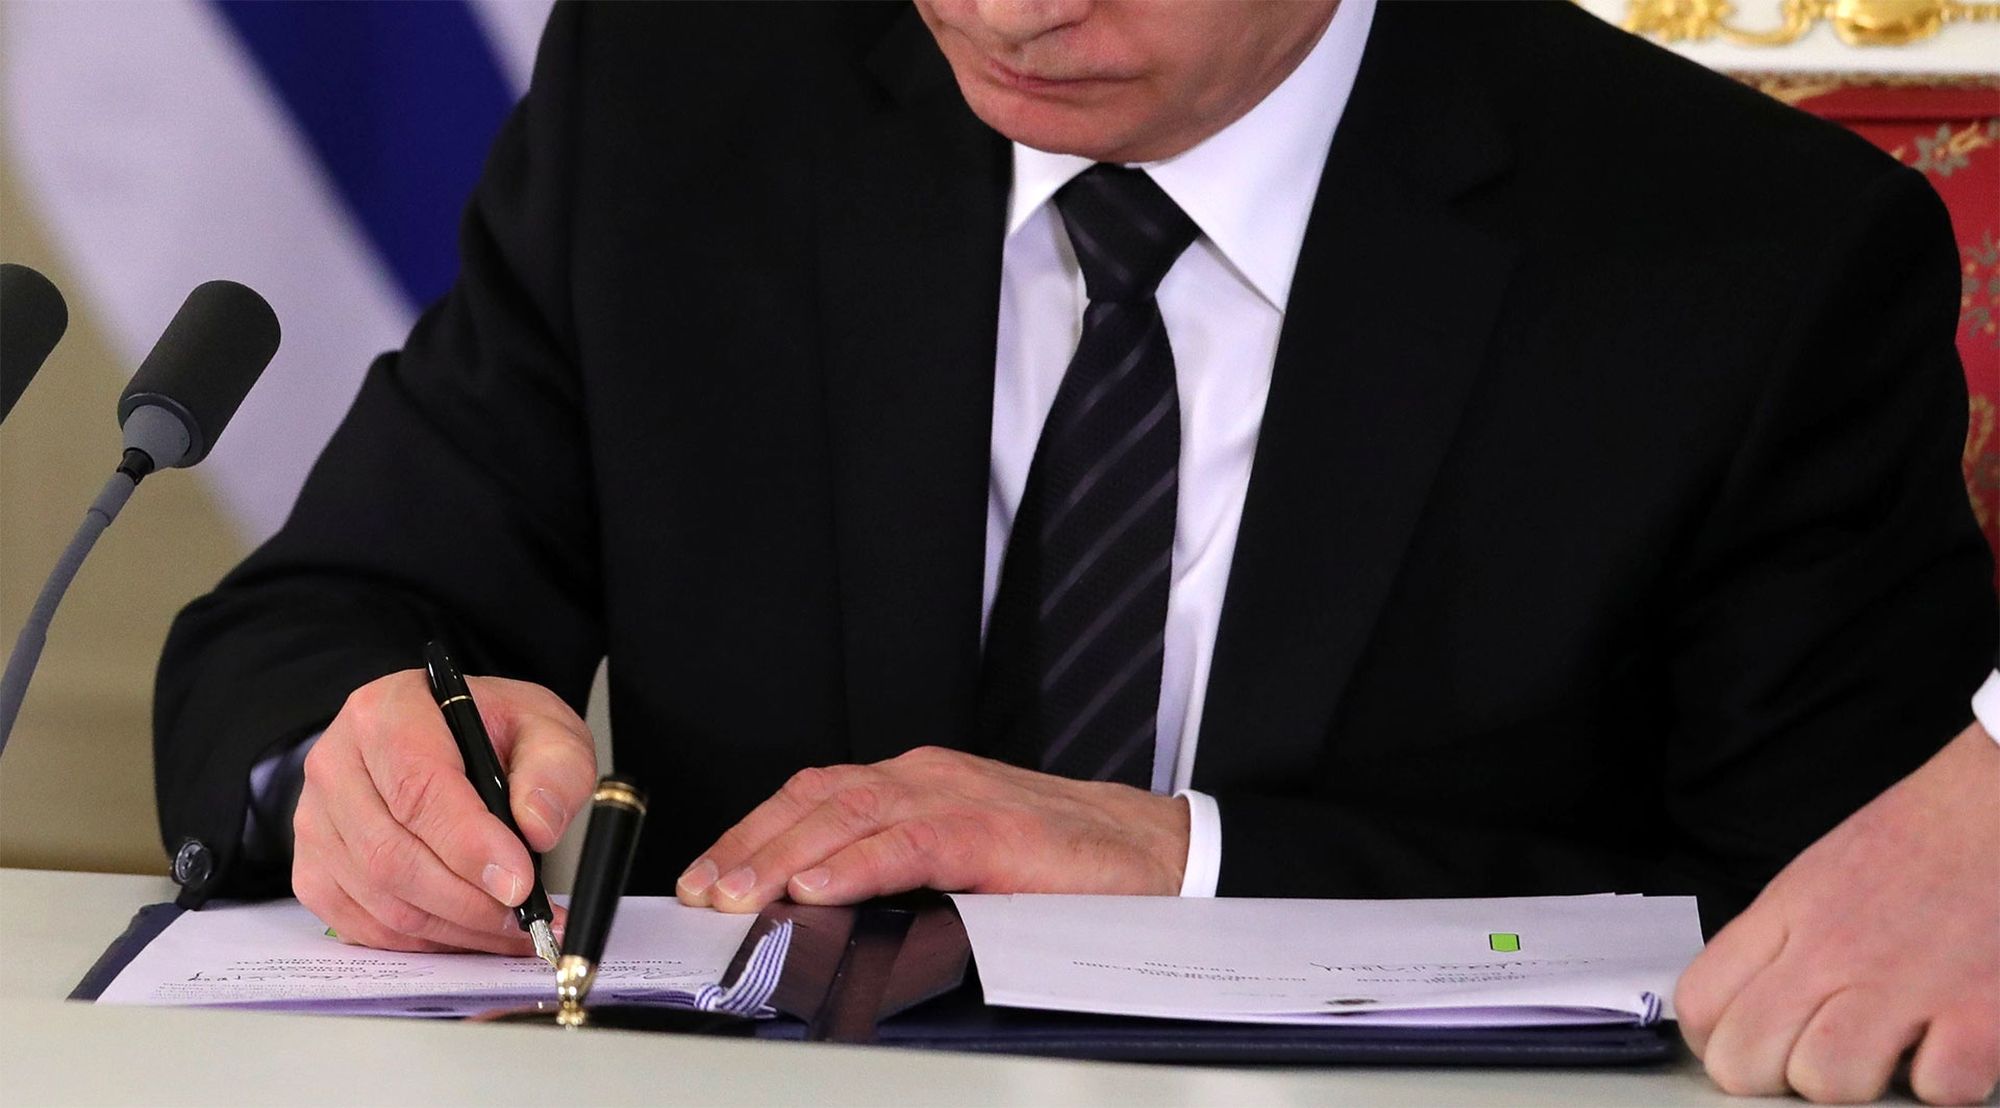 Упрощённое получение гражданства РФ по четырёхстороннему соглашению